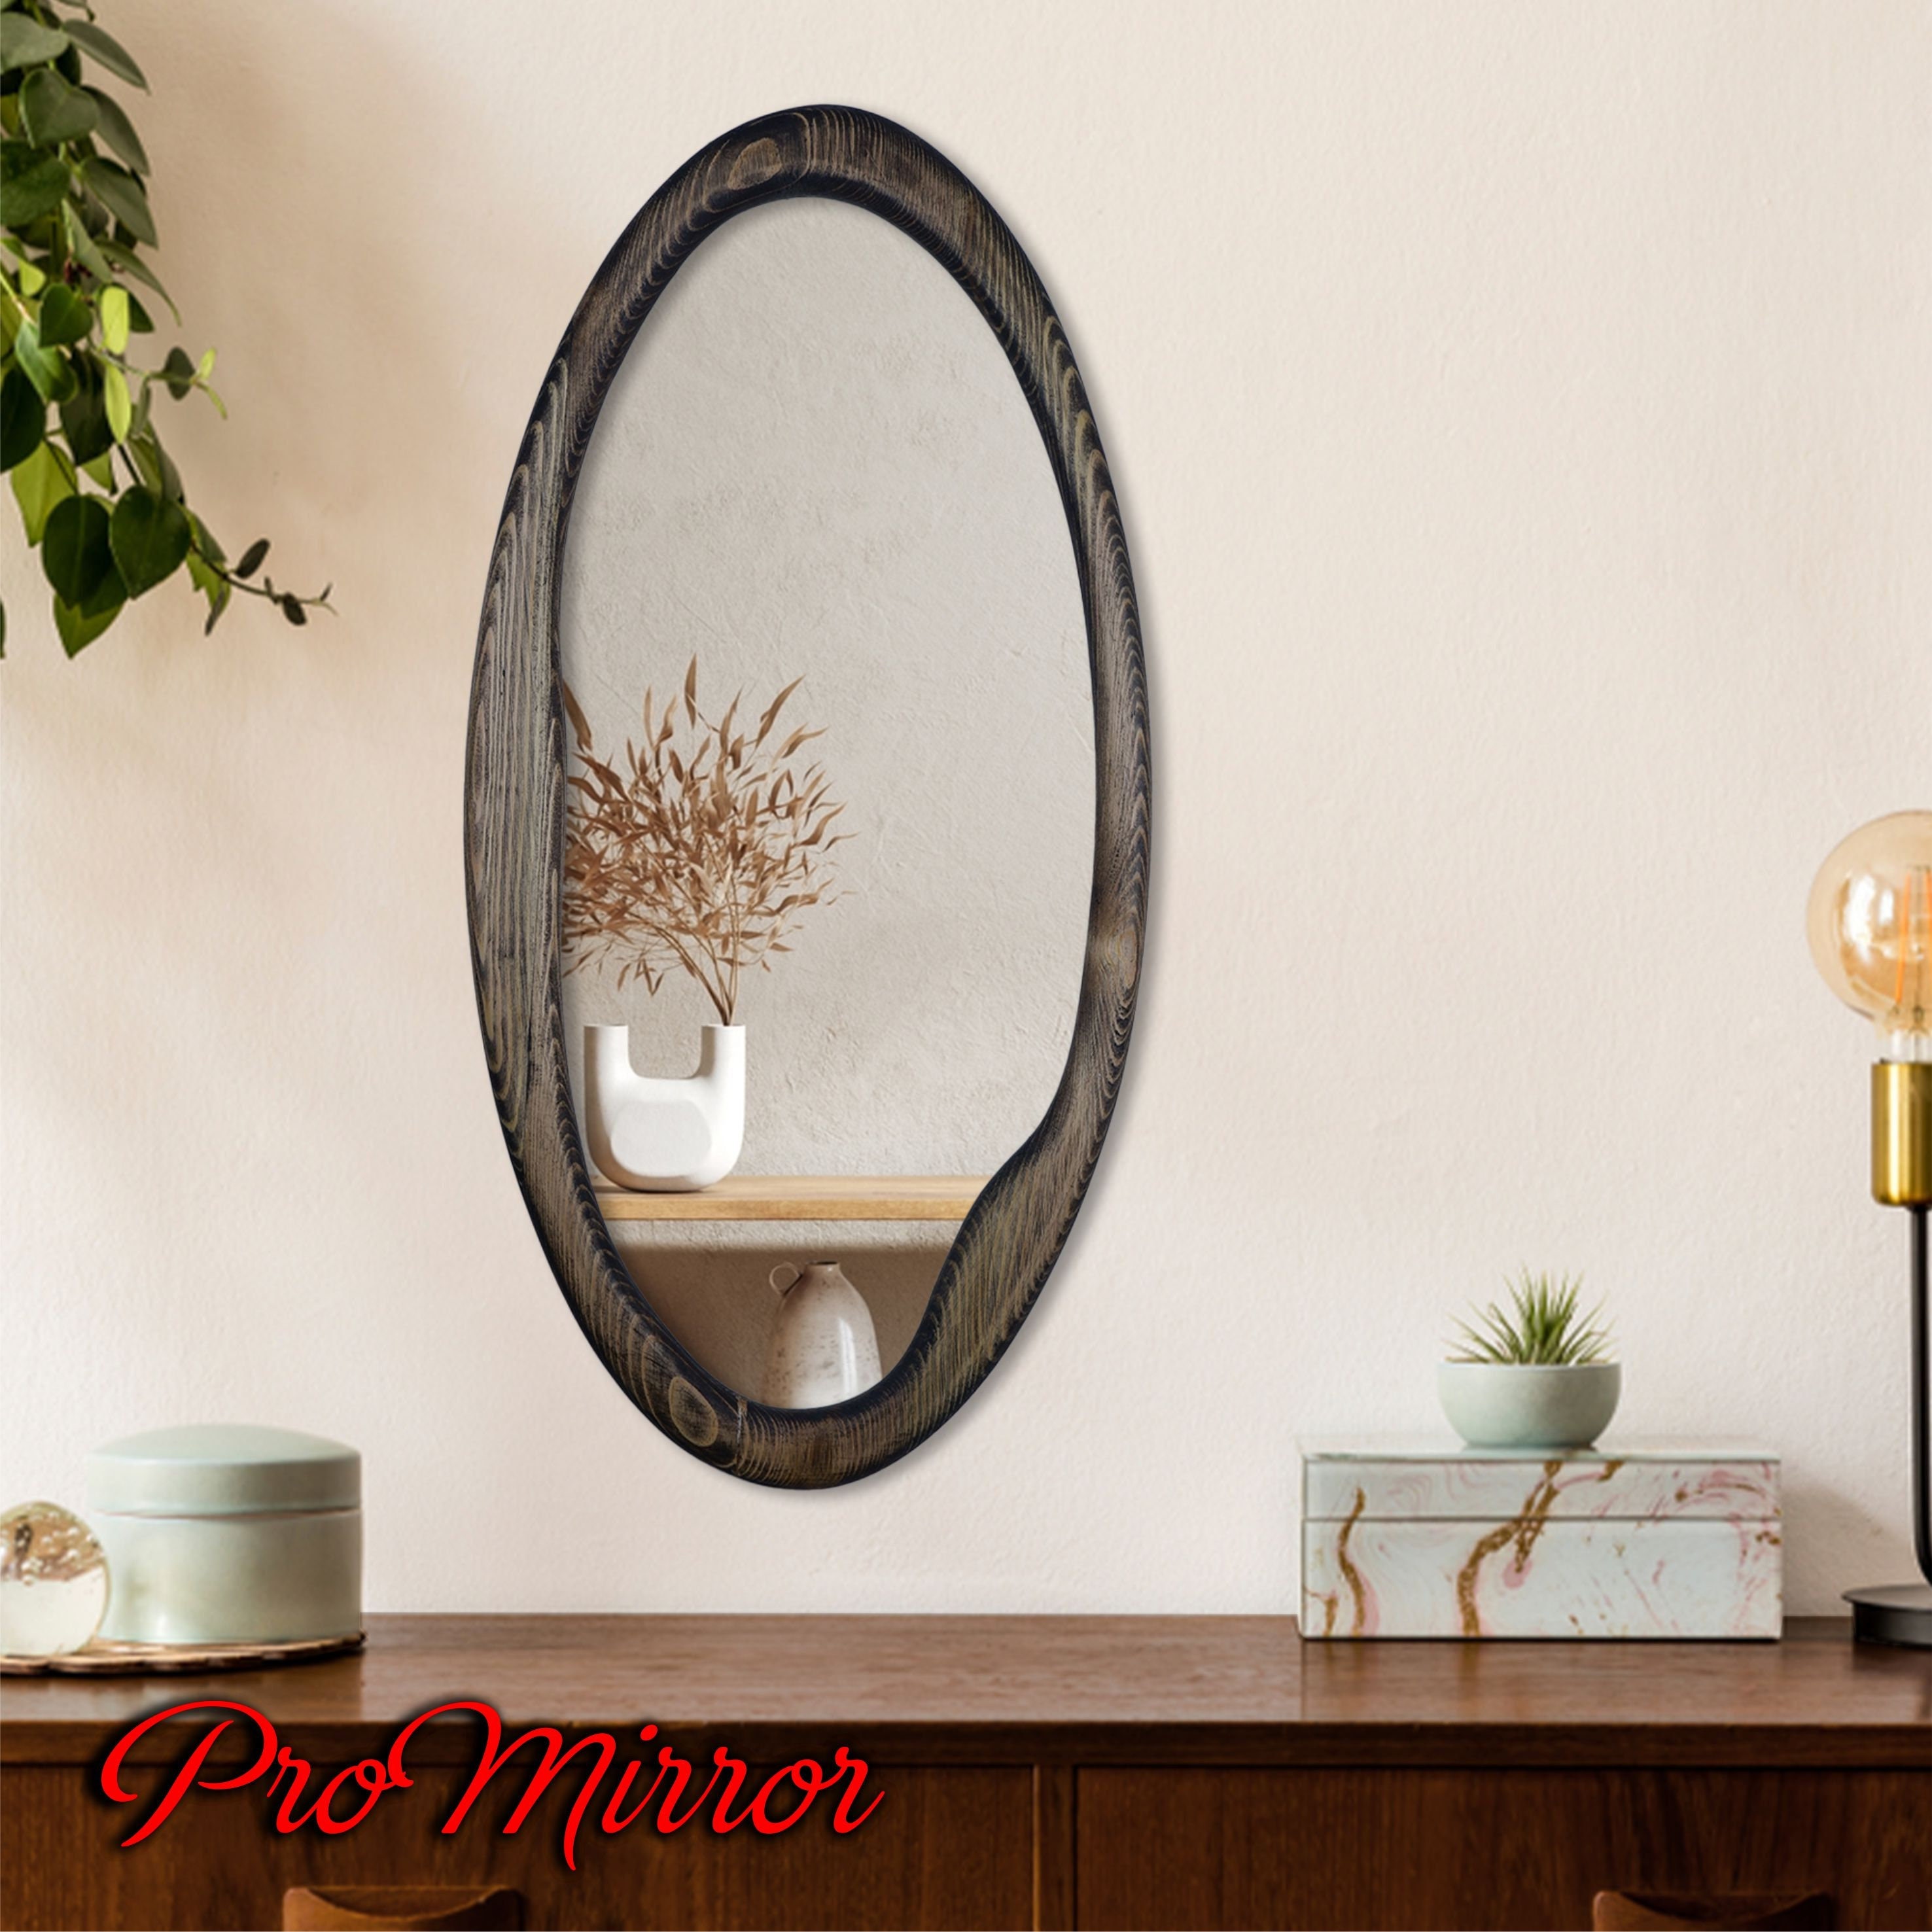 Espejo de pared ovalado negro, espejo de baño de 24 x 36 pulgadas para  montaje en pared, espejo ovalado para decoración del hogar, dormitorio,  sala de